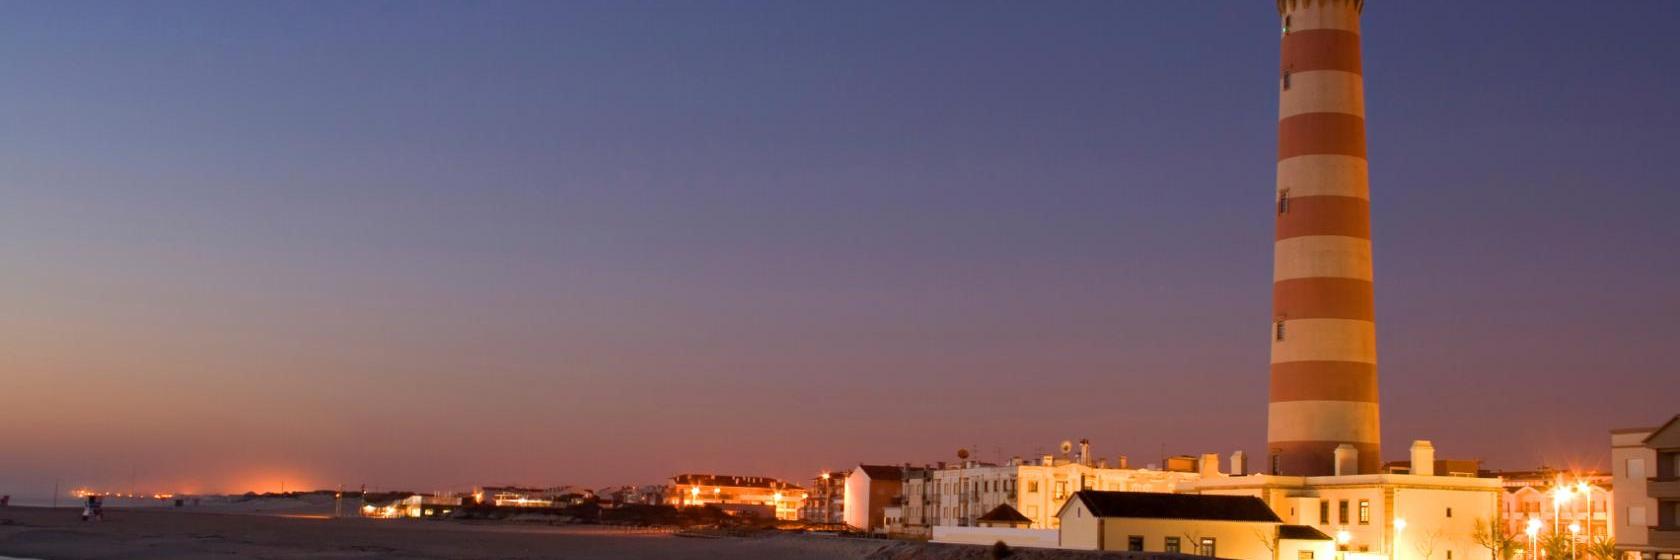 10 Best Praia da Barra Hotels, Portugal (From $110)